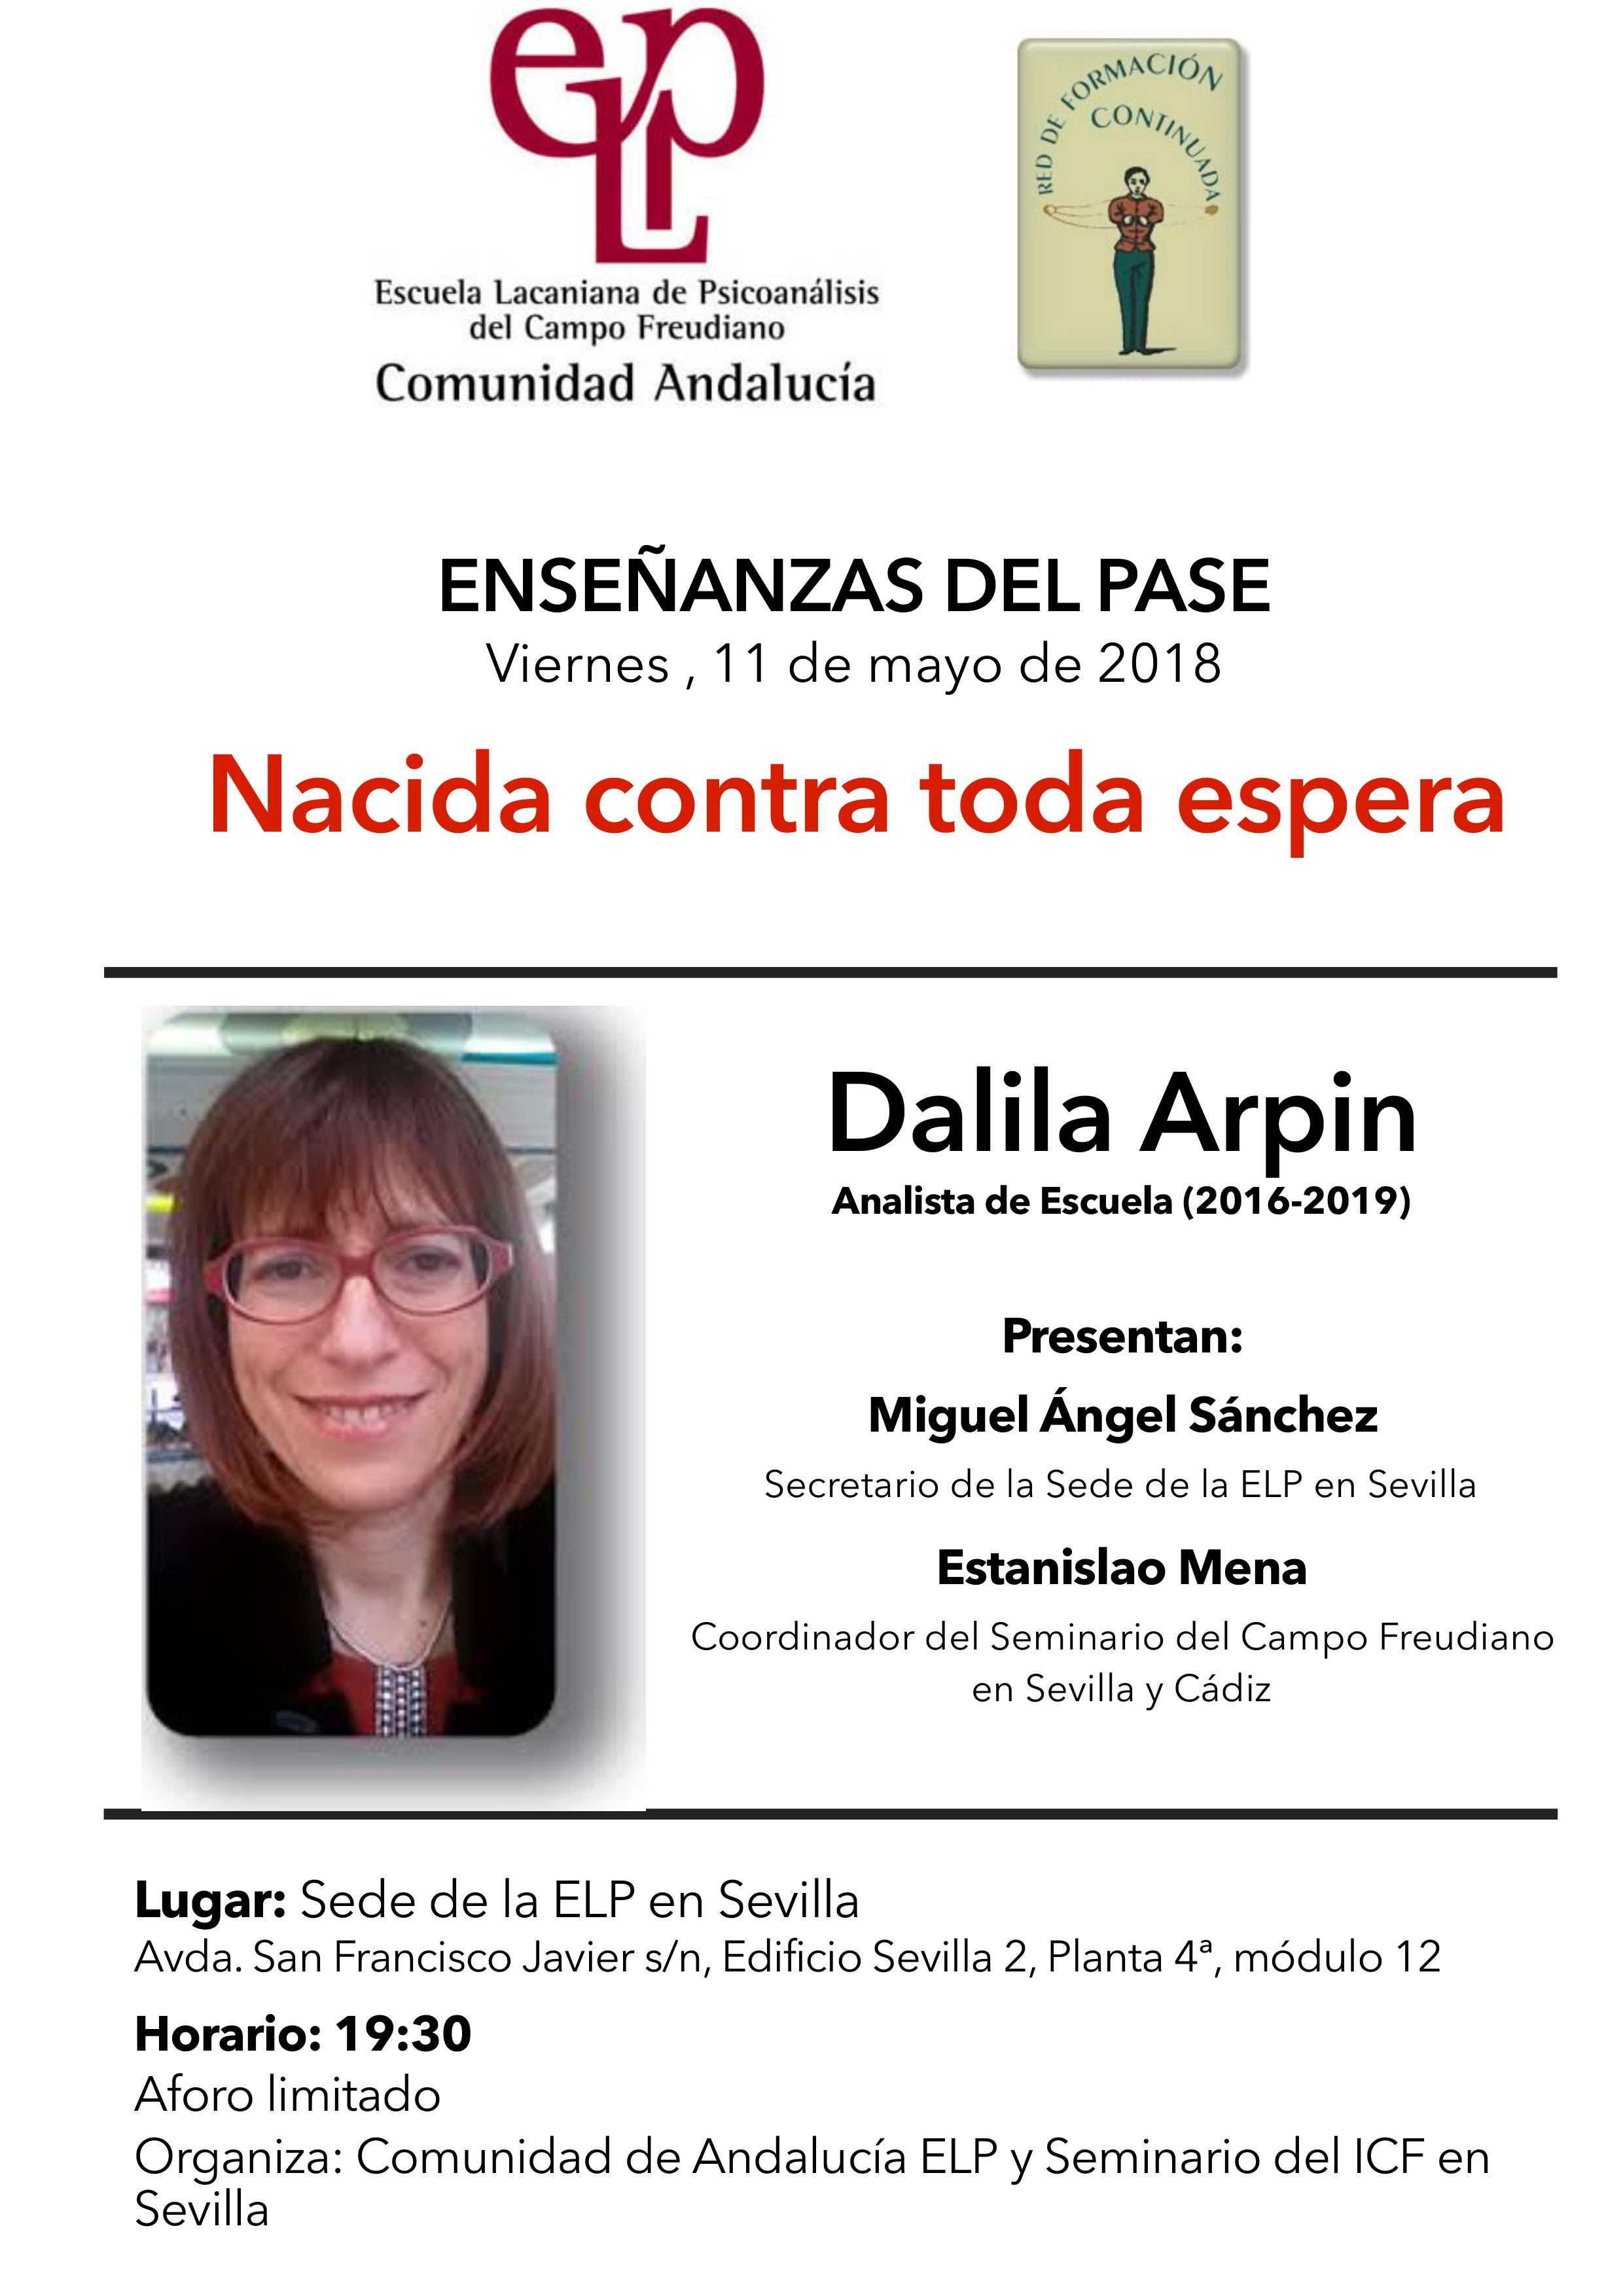 Enseñanzas del Pase: Dalila Arpin